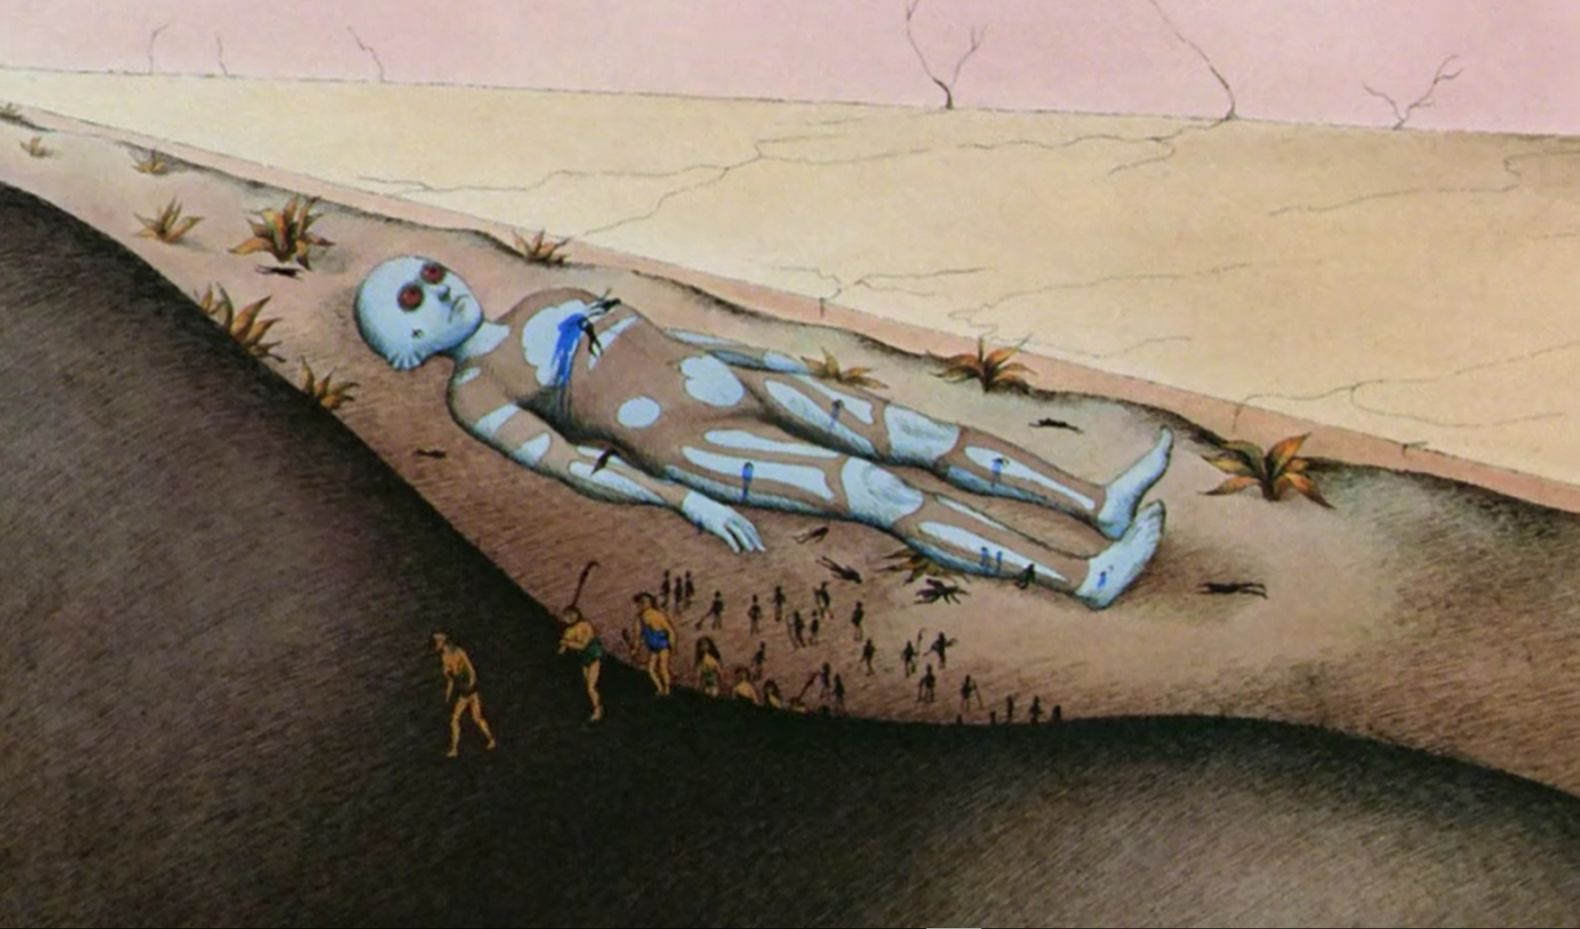 【影視動漫】當人類被像螞蟻一樣玩弄虐殺：70年代的超前想象力《原始星球》-第22張